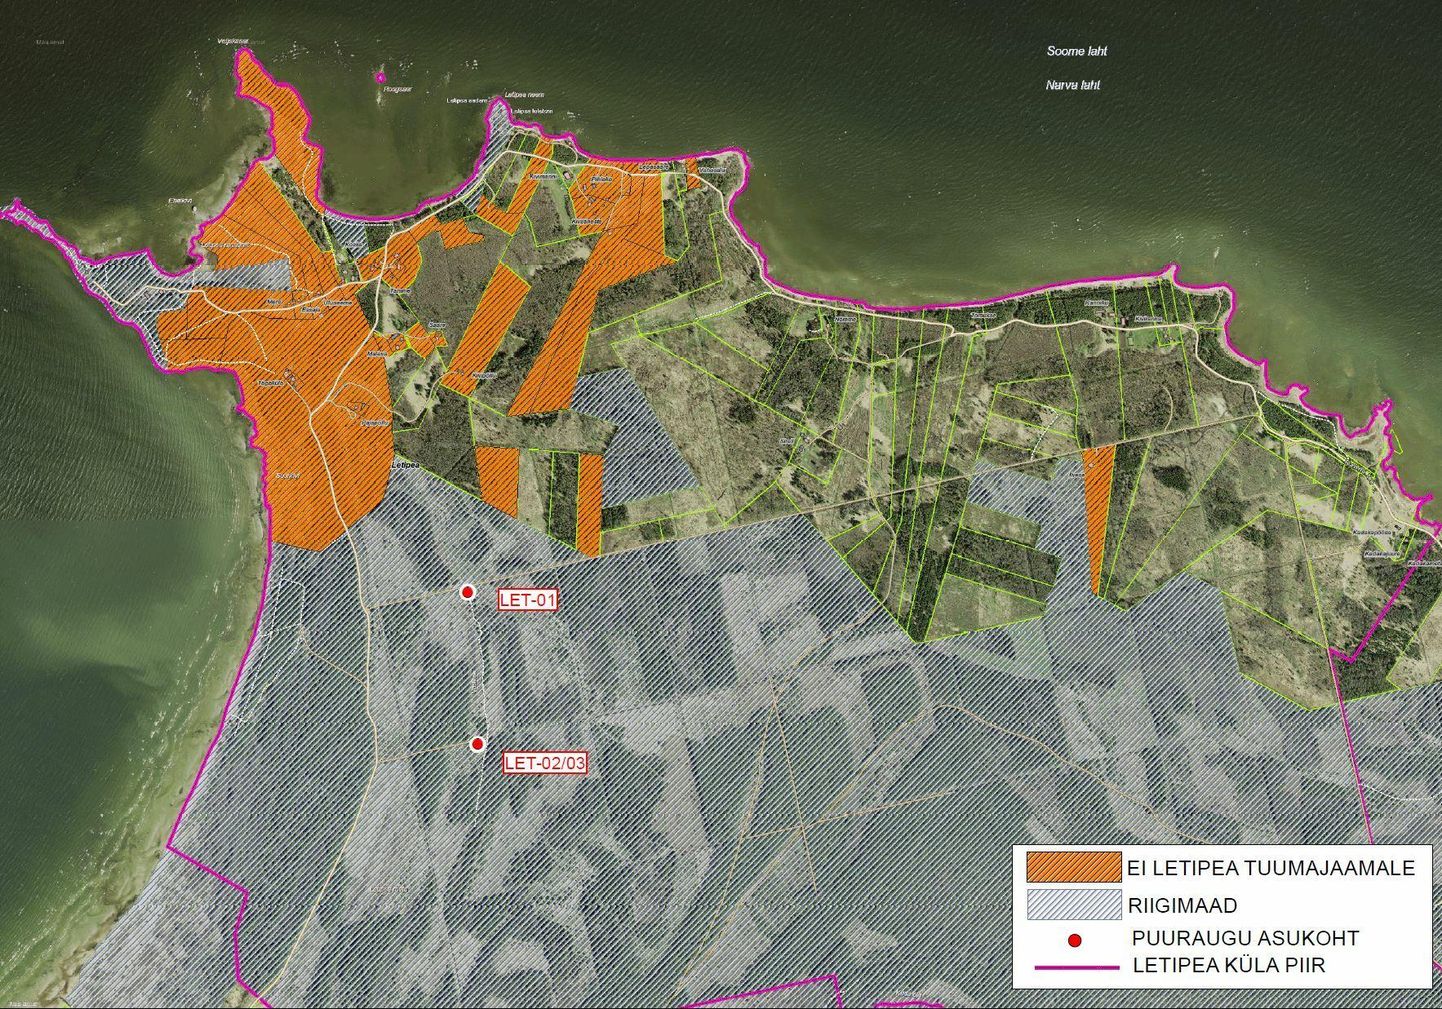 Карта недвижимости деревни Летипеа. Недвижимость, владельцы которой к полудню понедельника подписались против строительства атомной станции, отмечена оранжевым цветом.